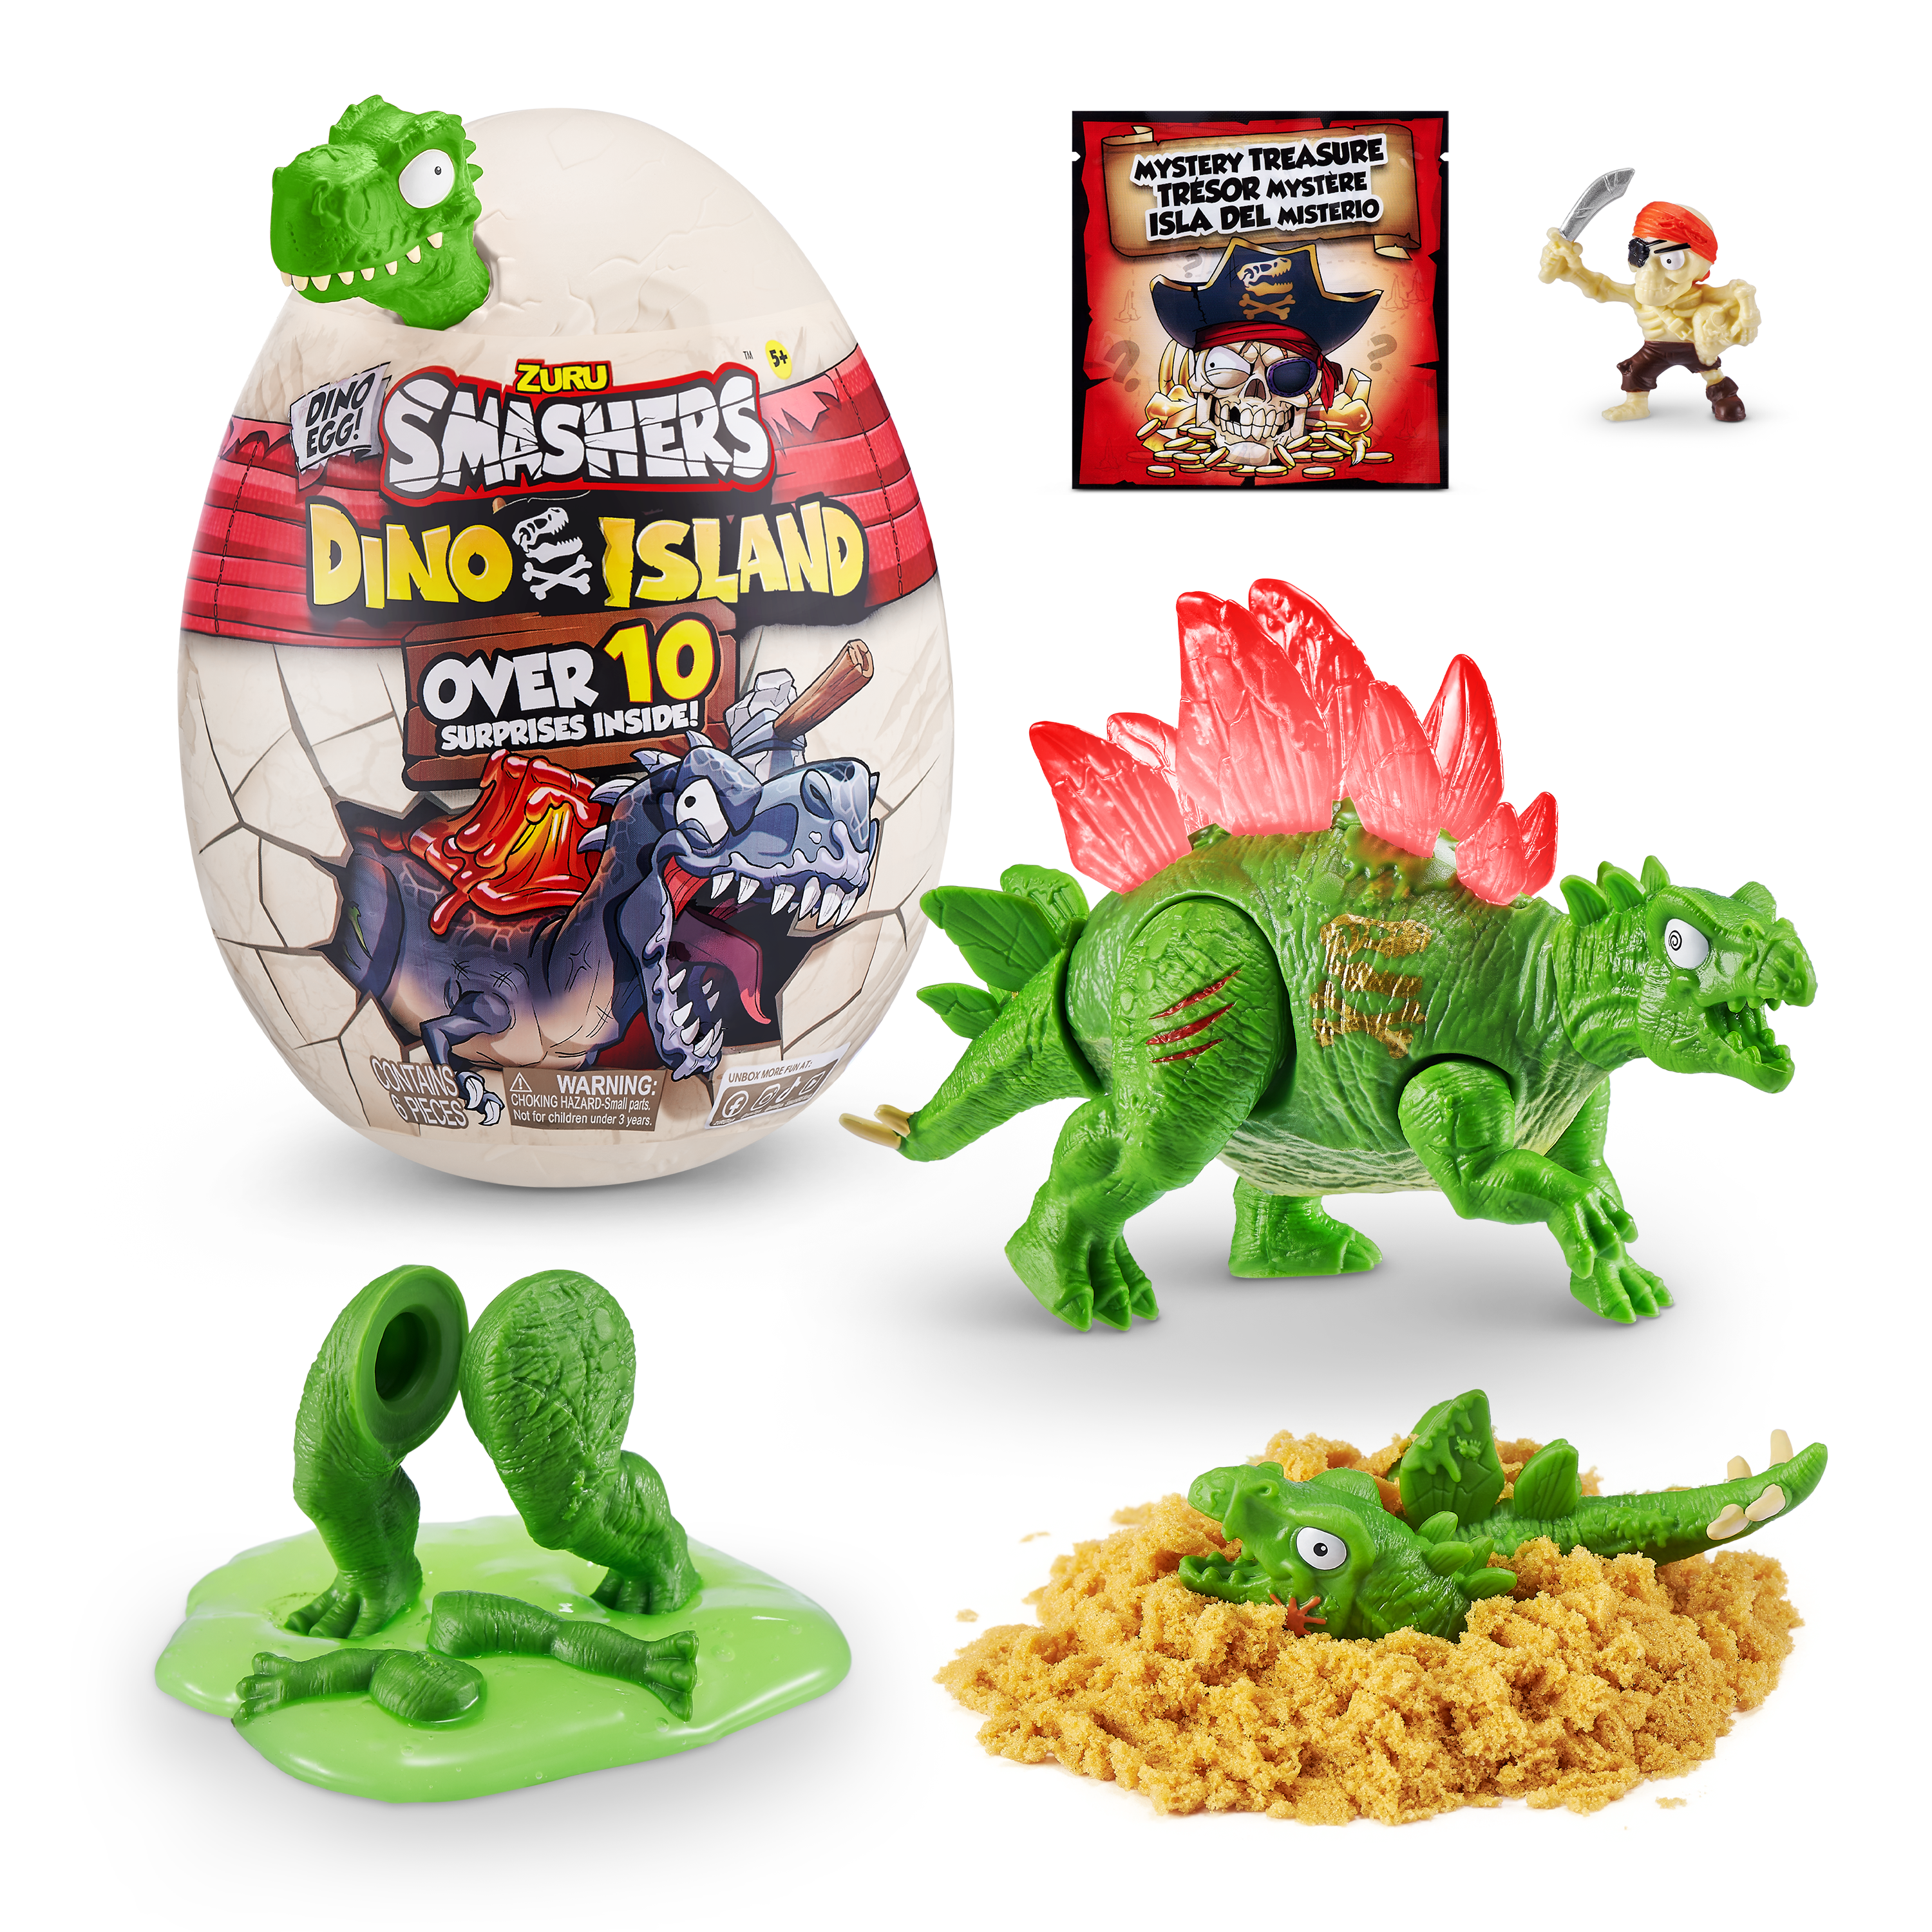 Игровой набор  Smashers Dino Island сюрприз в яйце малое яйцо, 10 сюрпризов Вариант 2— магазин-салютов.рус